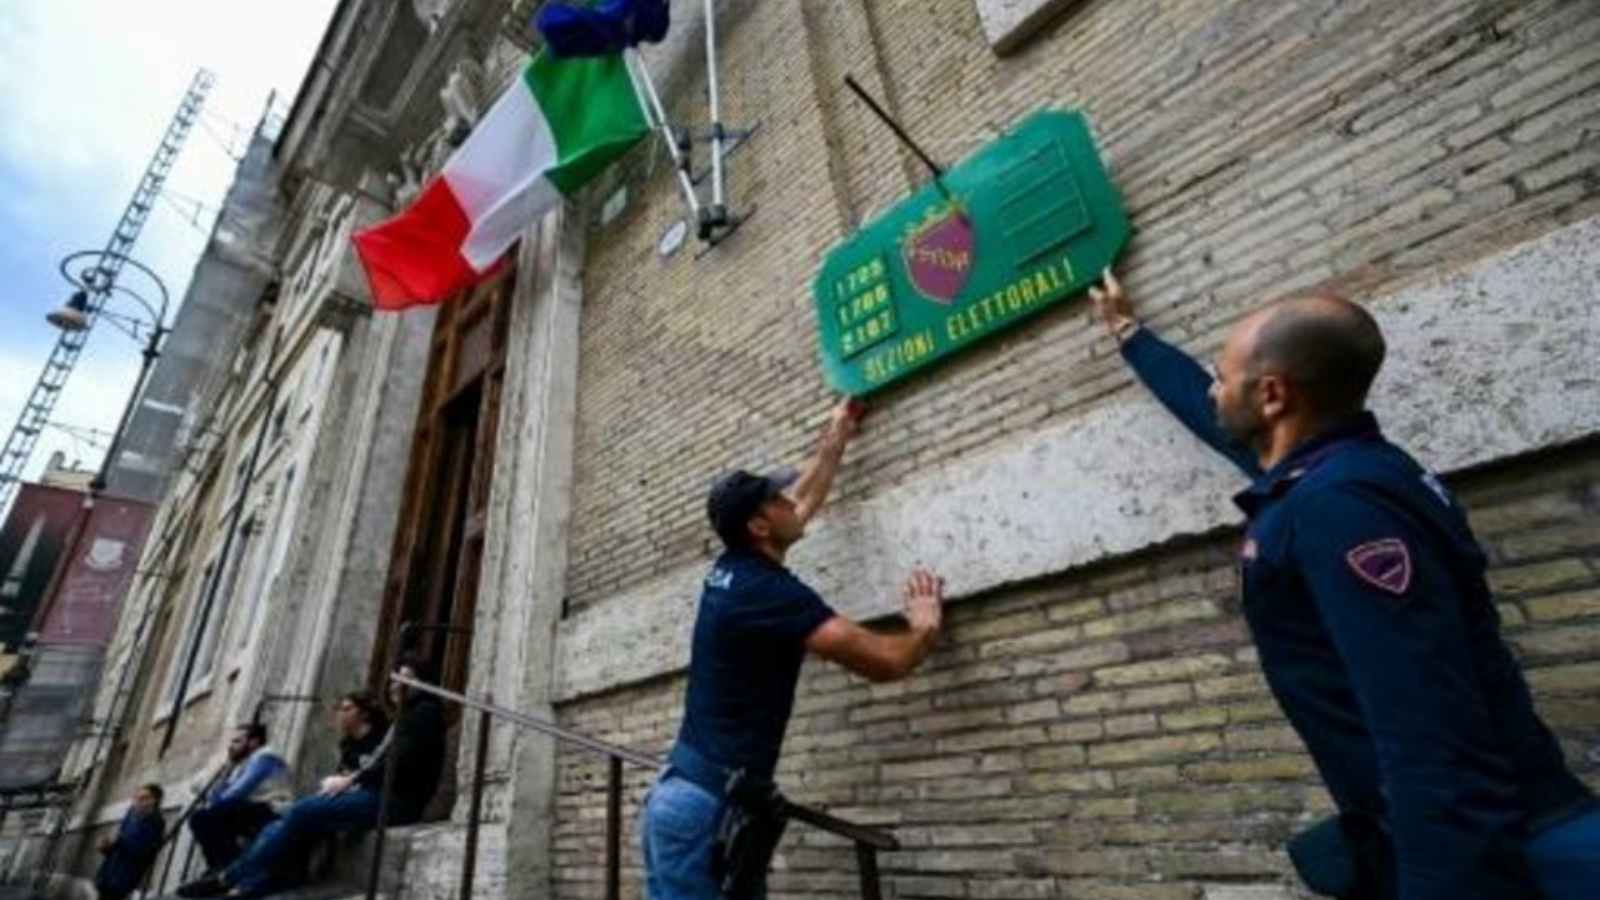 شرطيون يثبتون لافتة تشير إلى مركز اقتراع في روما في 24 سبتمبر 2022 عشية الانتخابات التشريعية الإيطالية